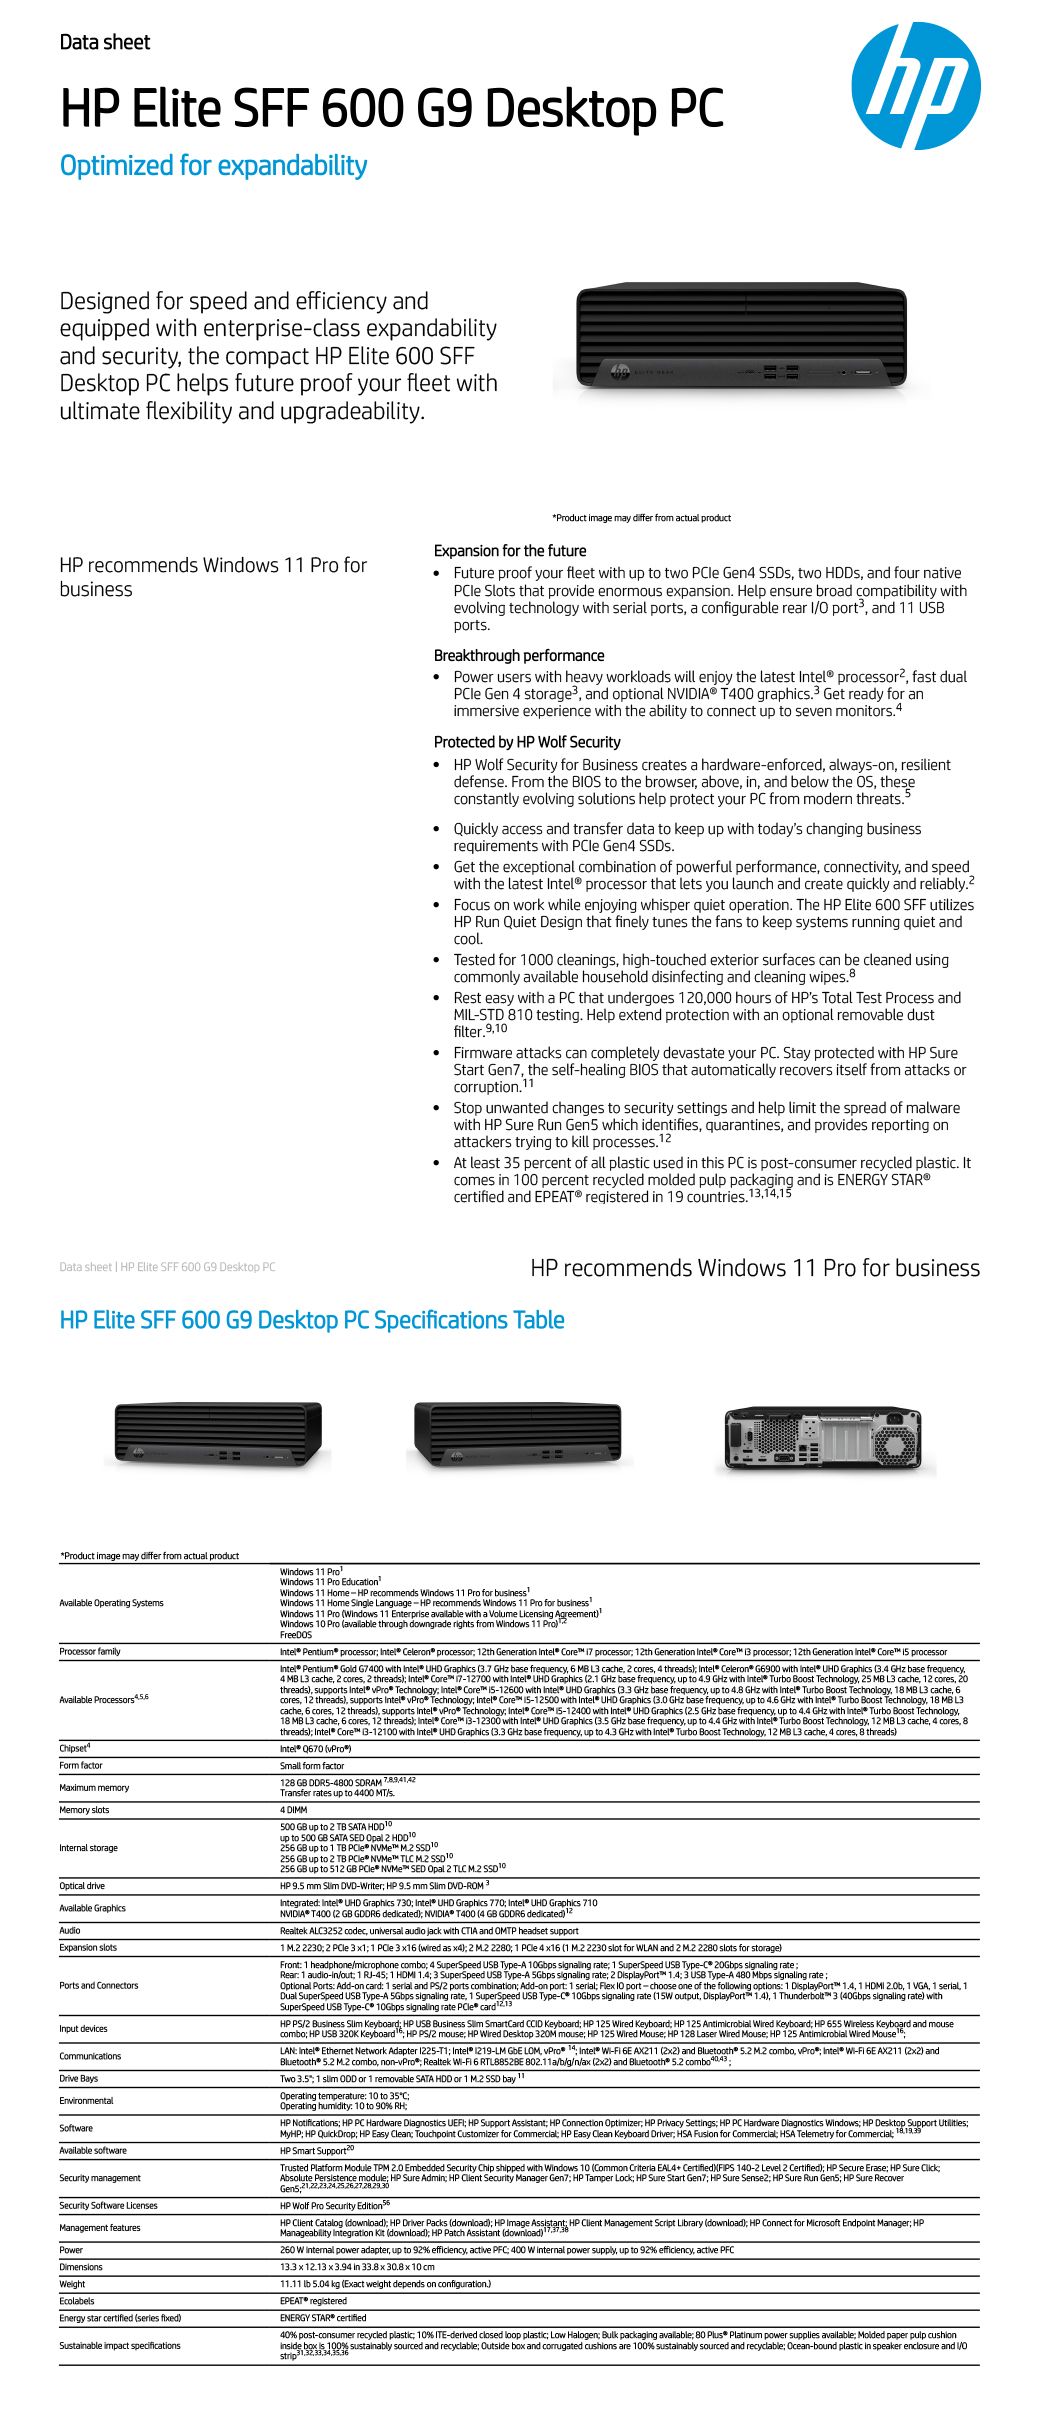 商用)HP 600G9 SFF(i5-12500/8G/512G SSD/W11P) - PChome 24h購物